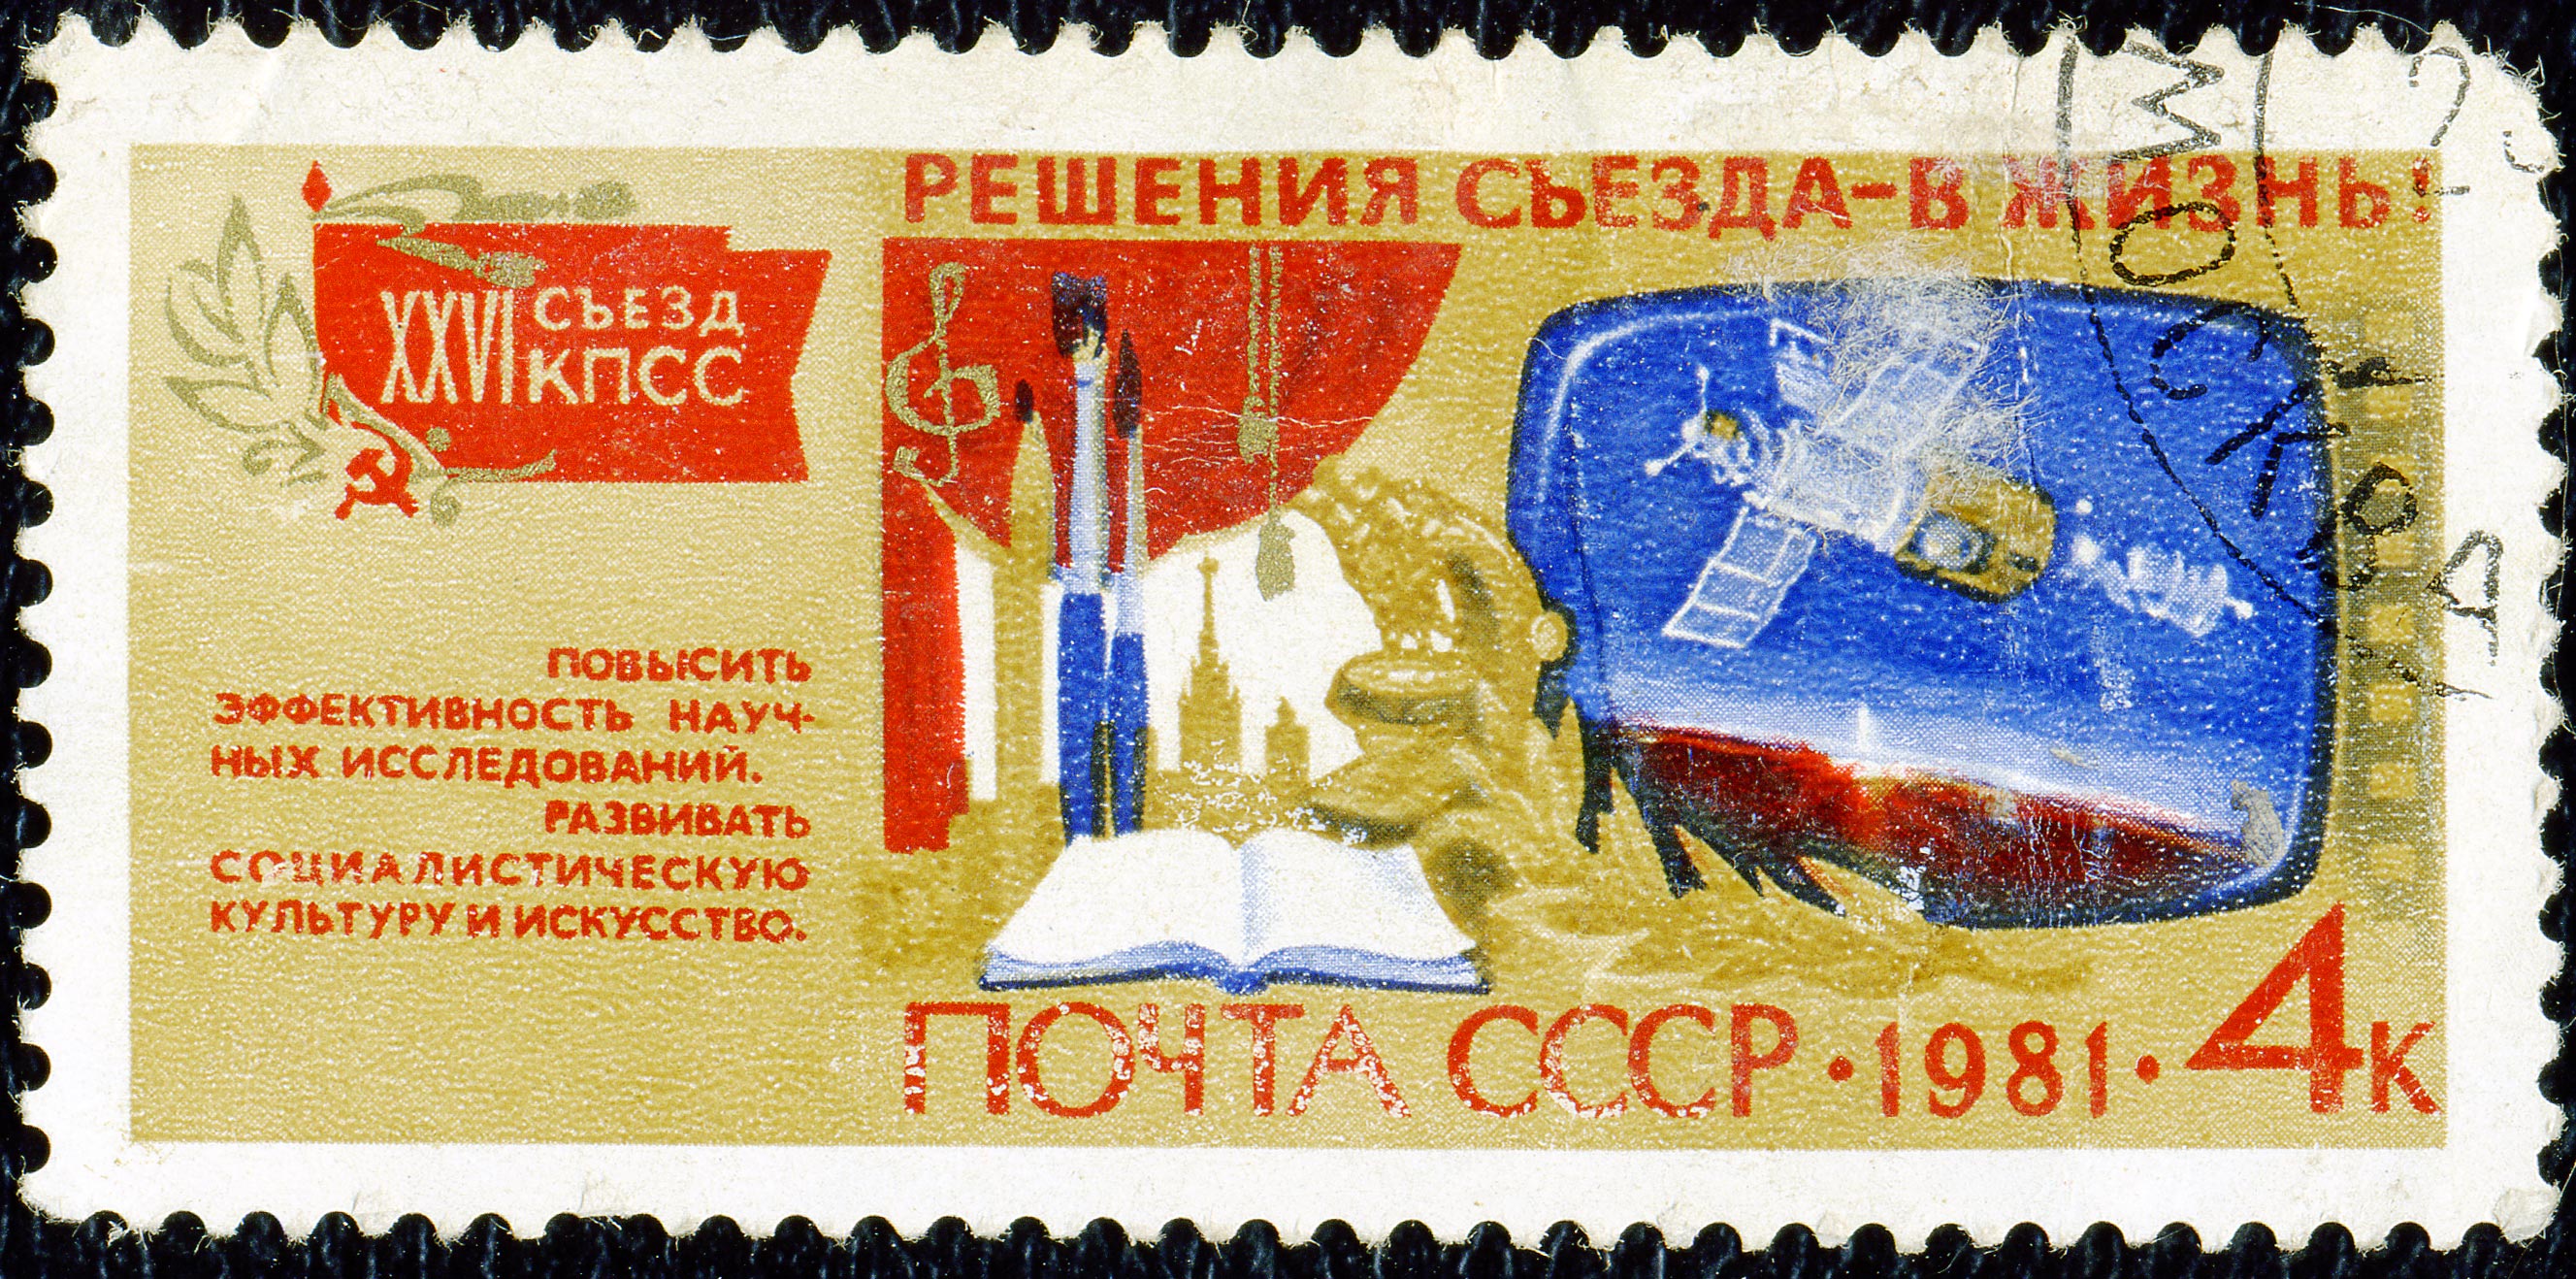 1981. XXVI съезд КПСС